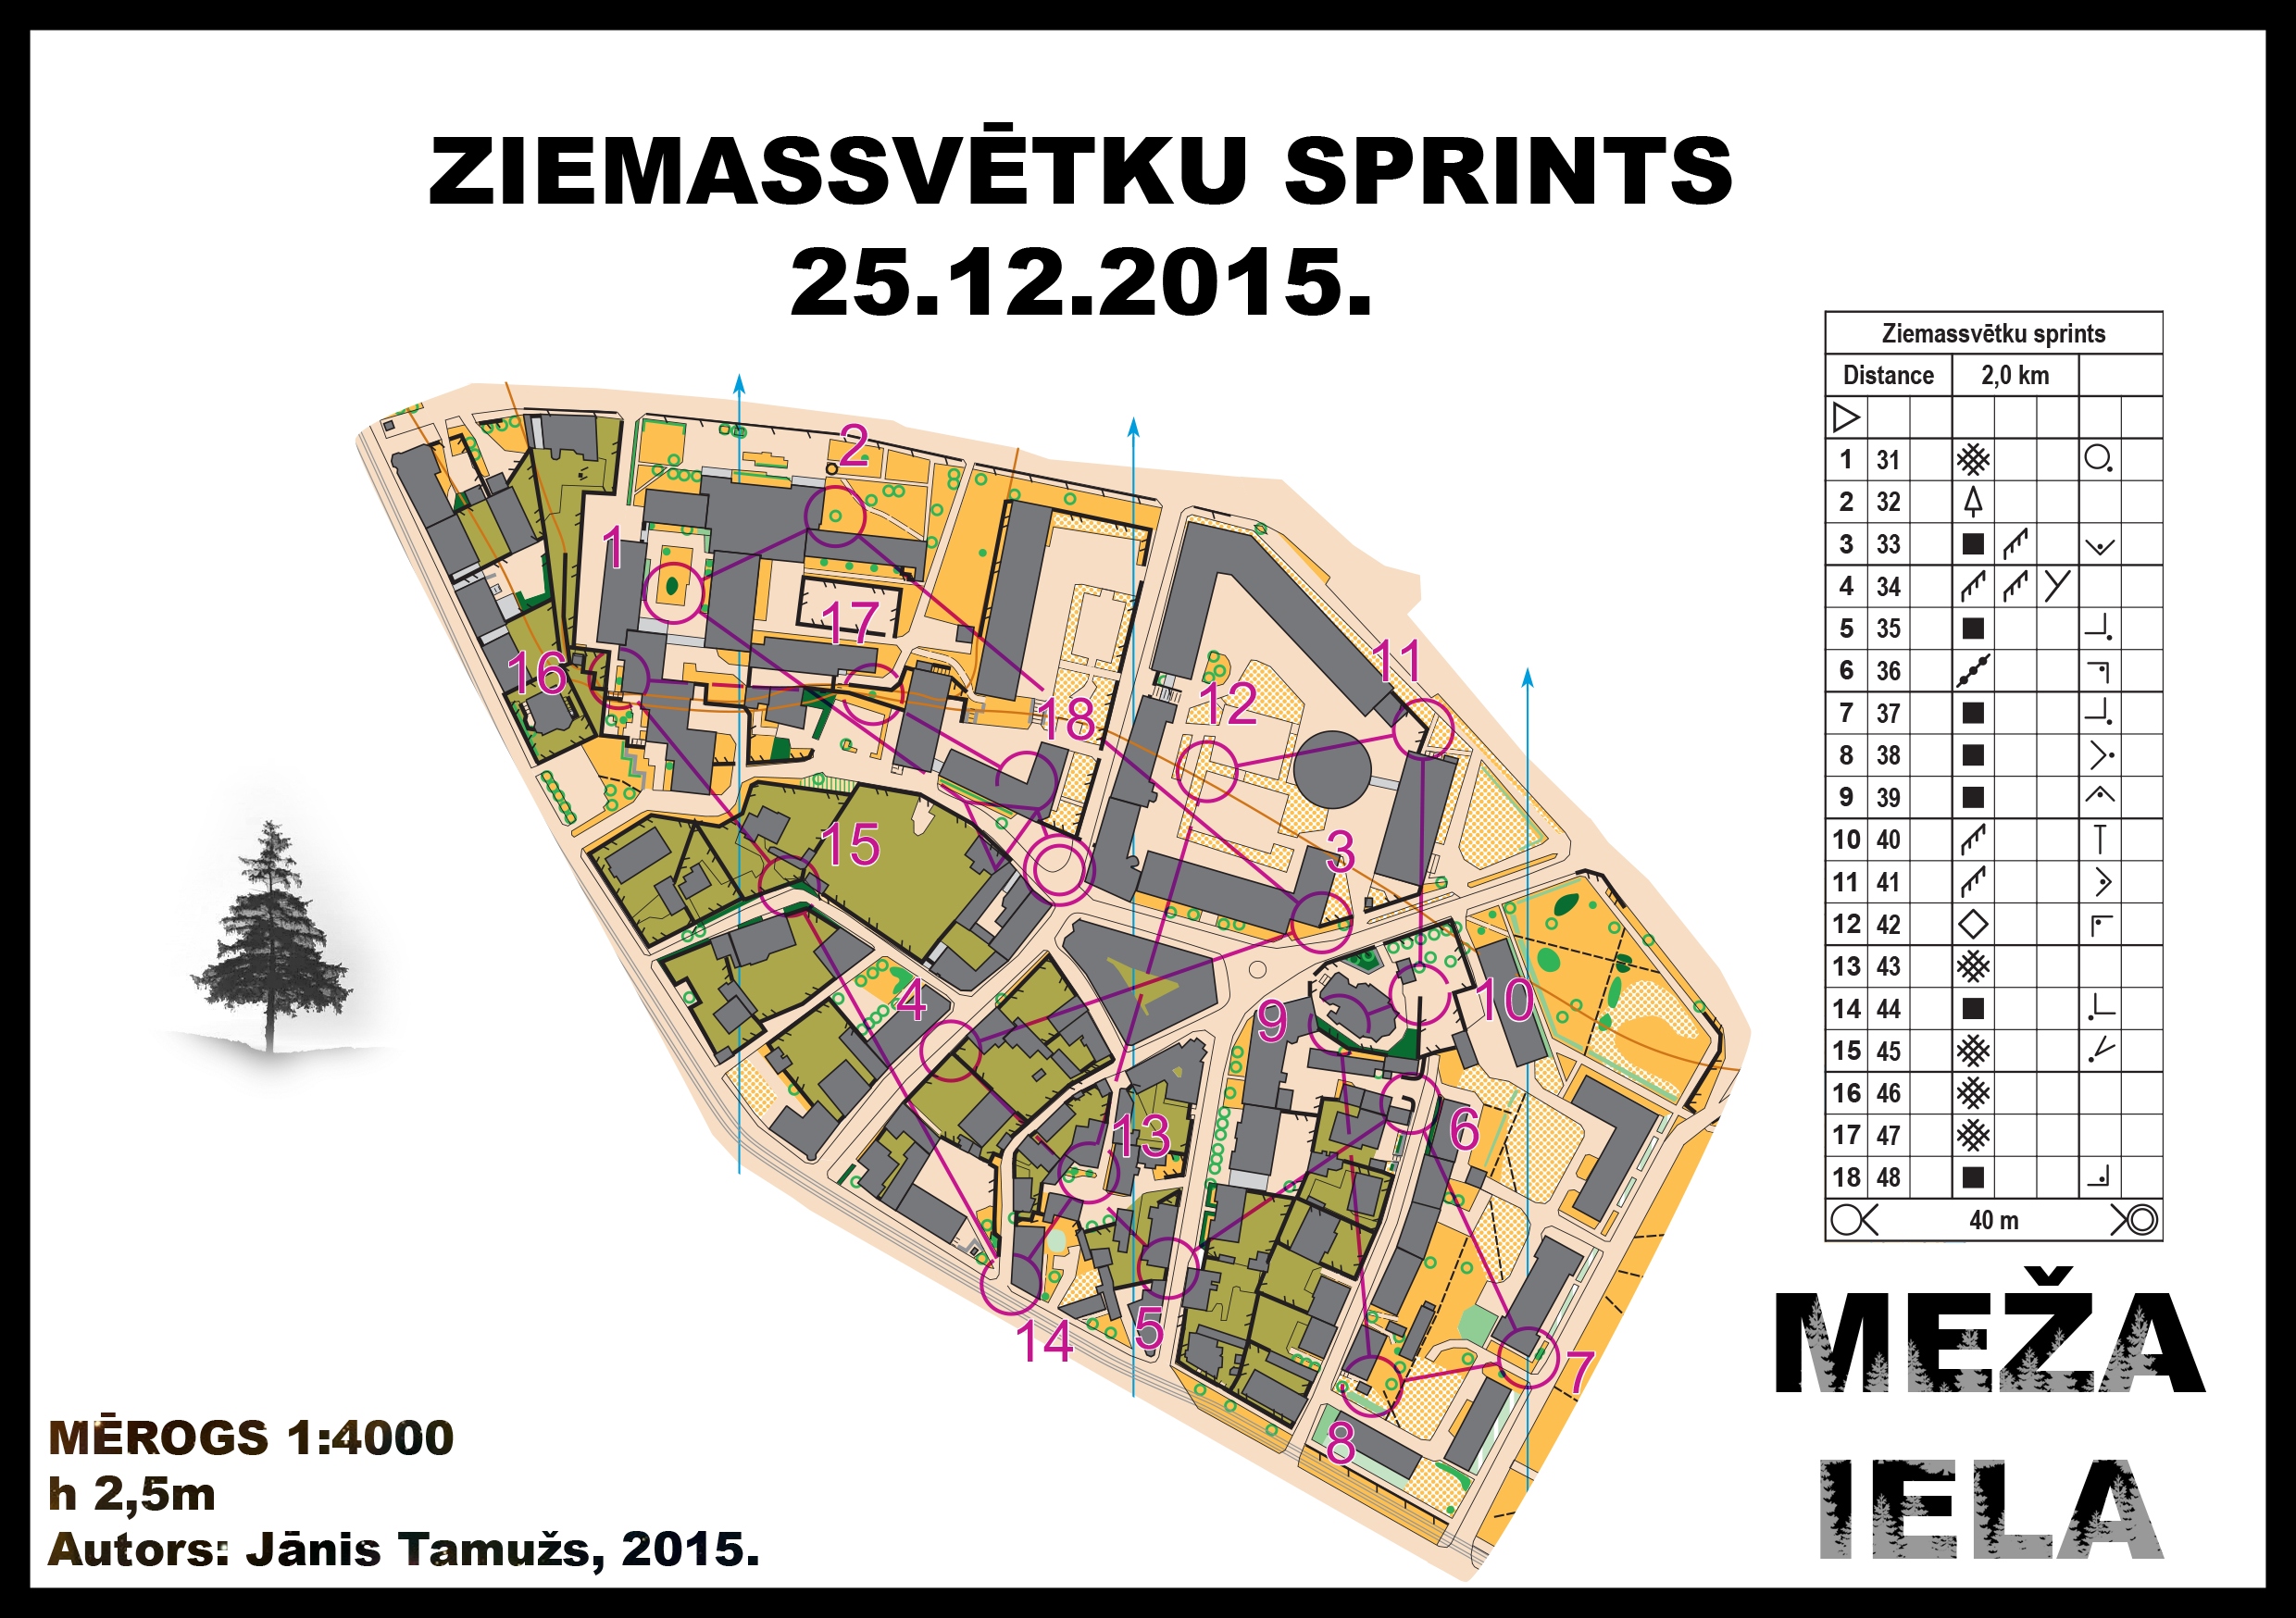 Ziemassvetku sprints (25/12/2015)